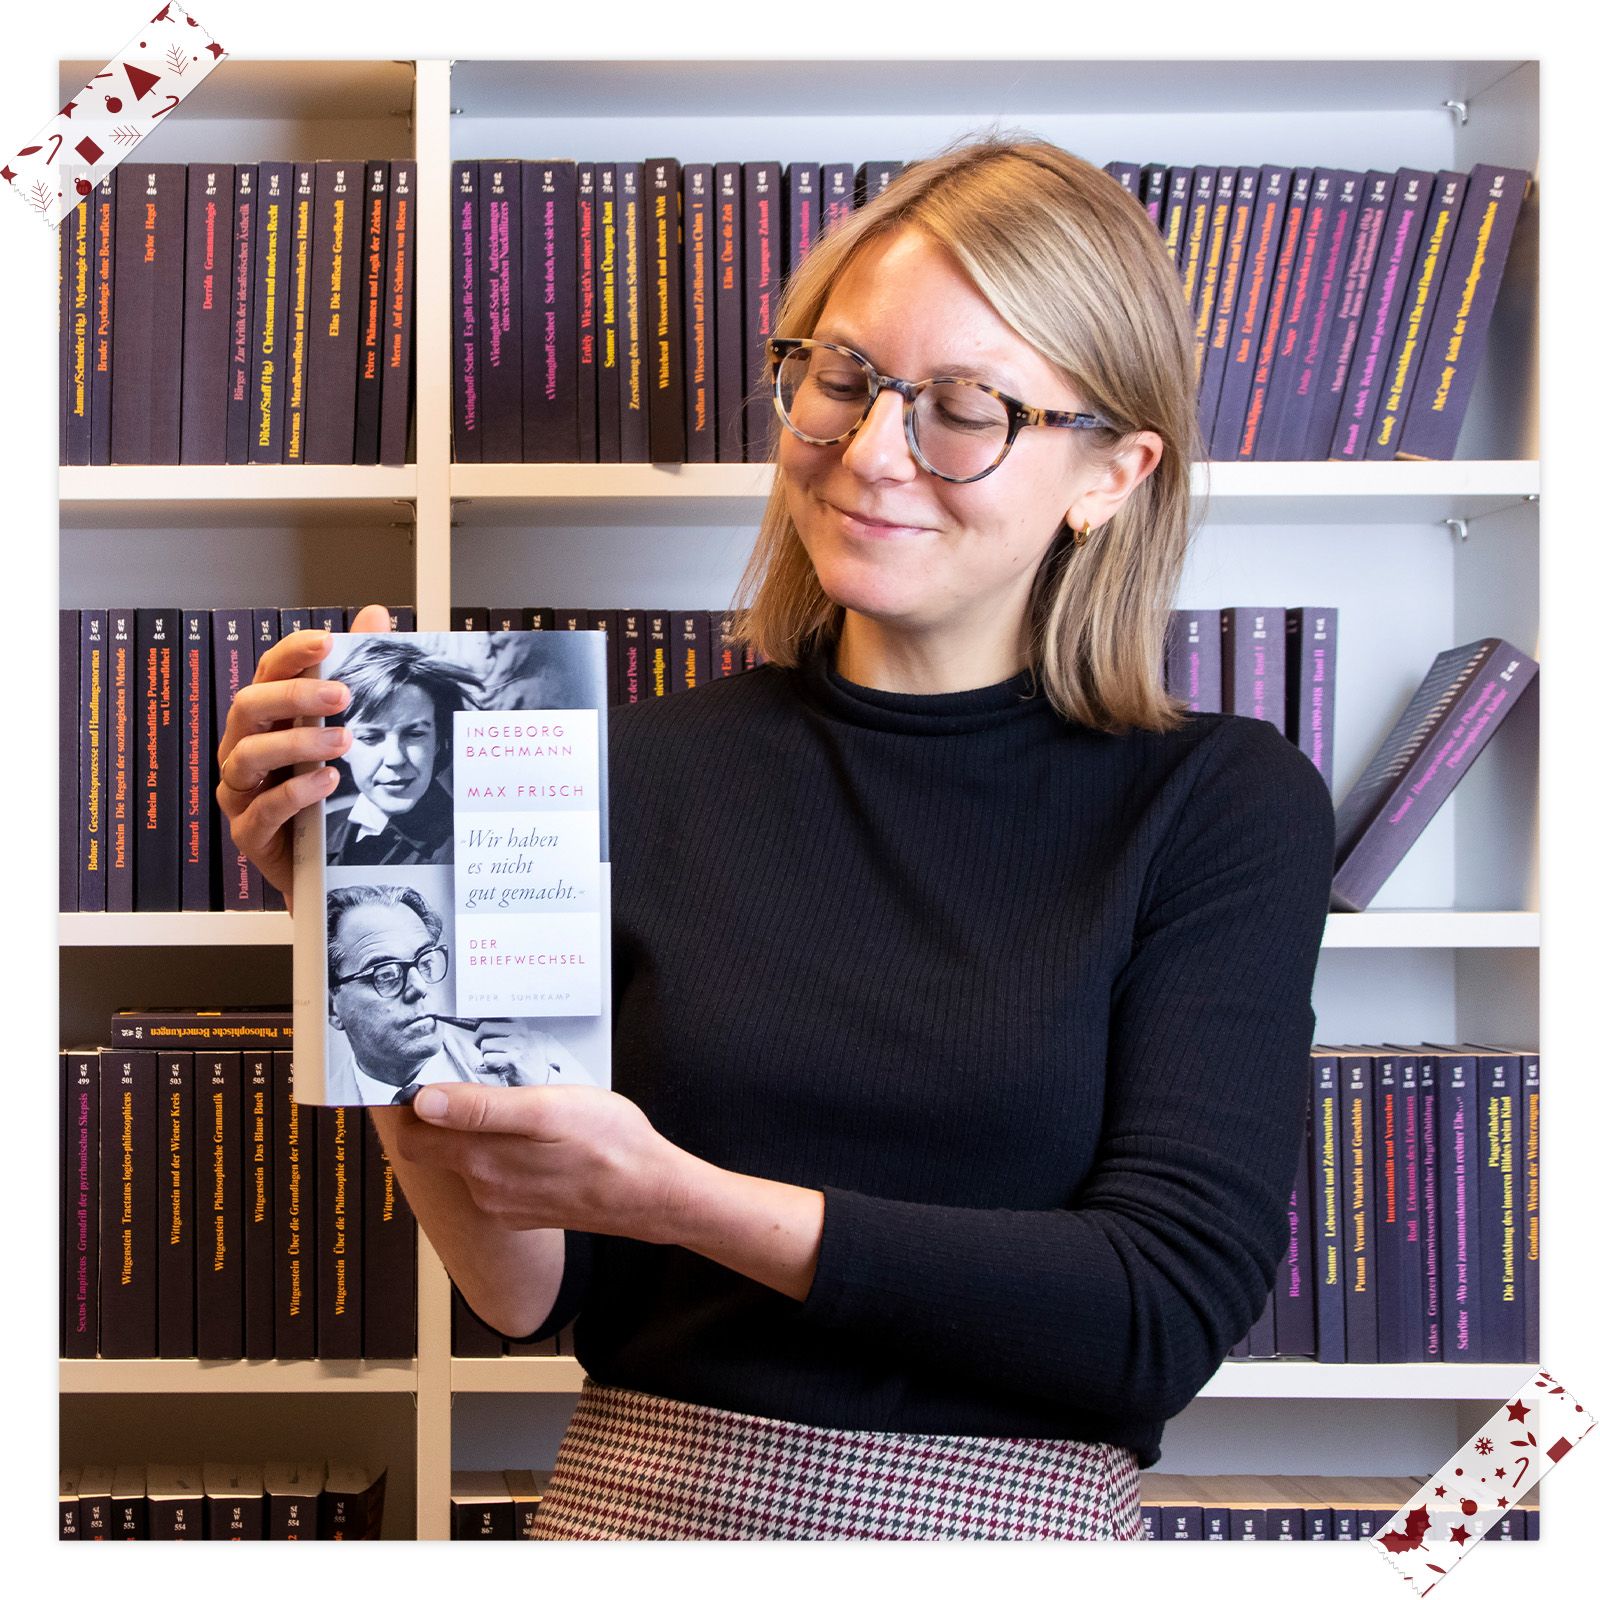 Tabitha van Hauten (Online- und Lesermarketing) empfiehlt »Wir haben es nicht gut gemacht« – Der Briefwechsel von Ingeborg Bachmann und Max Frisch